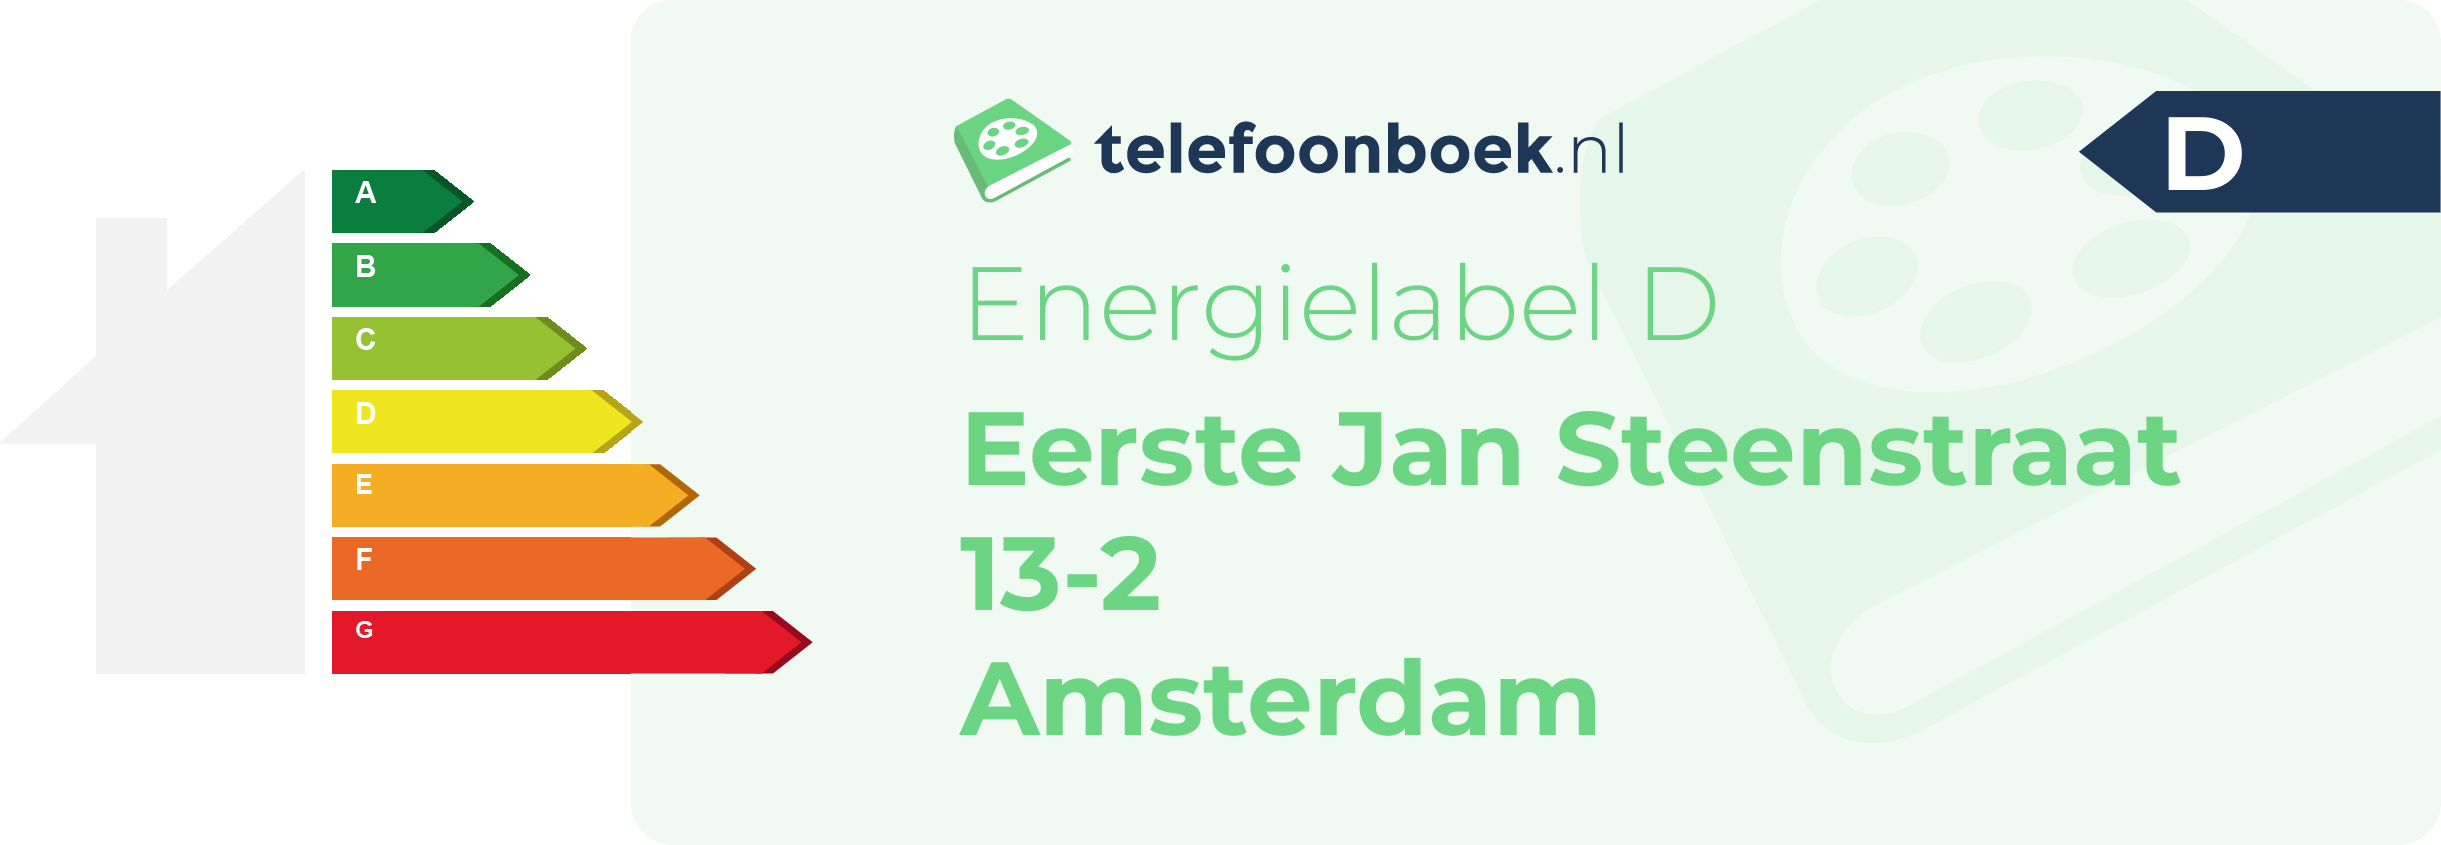 Energielabel Eerste Jan Steenstraat 13-2 Amsterdam